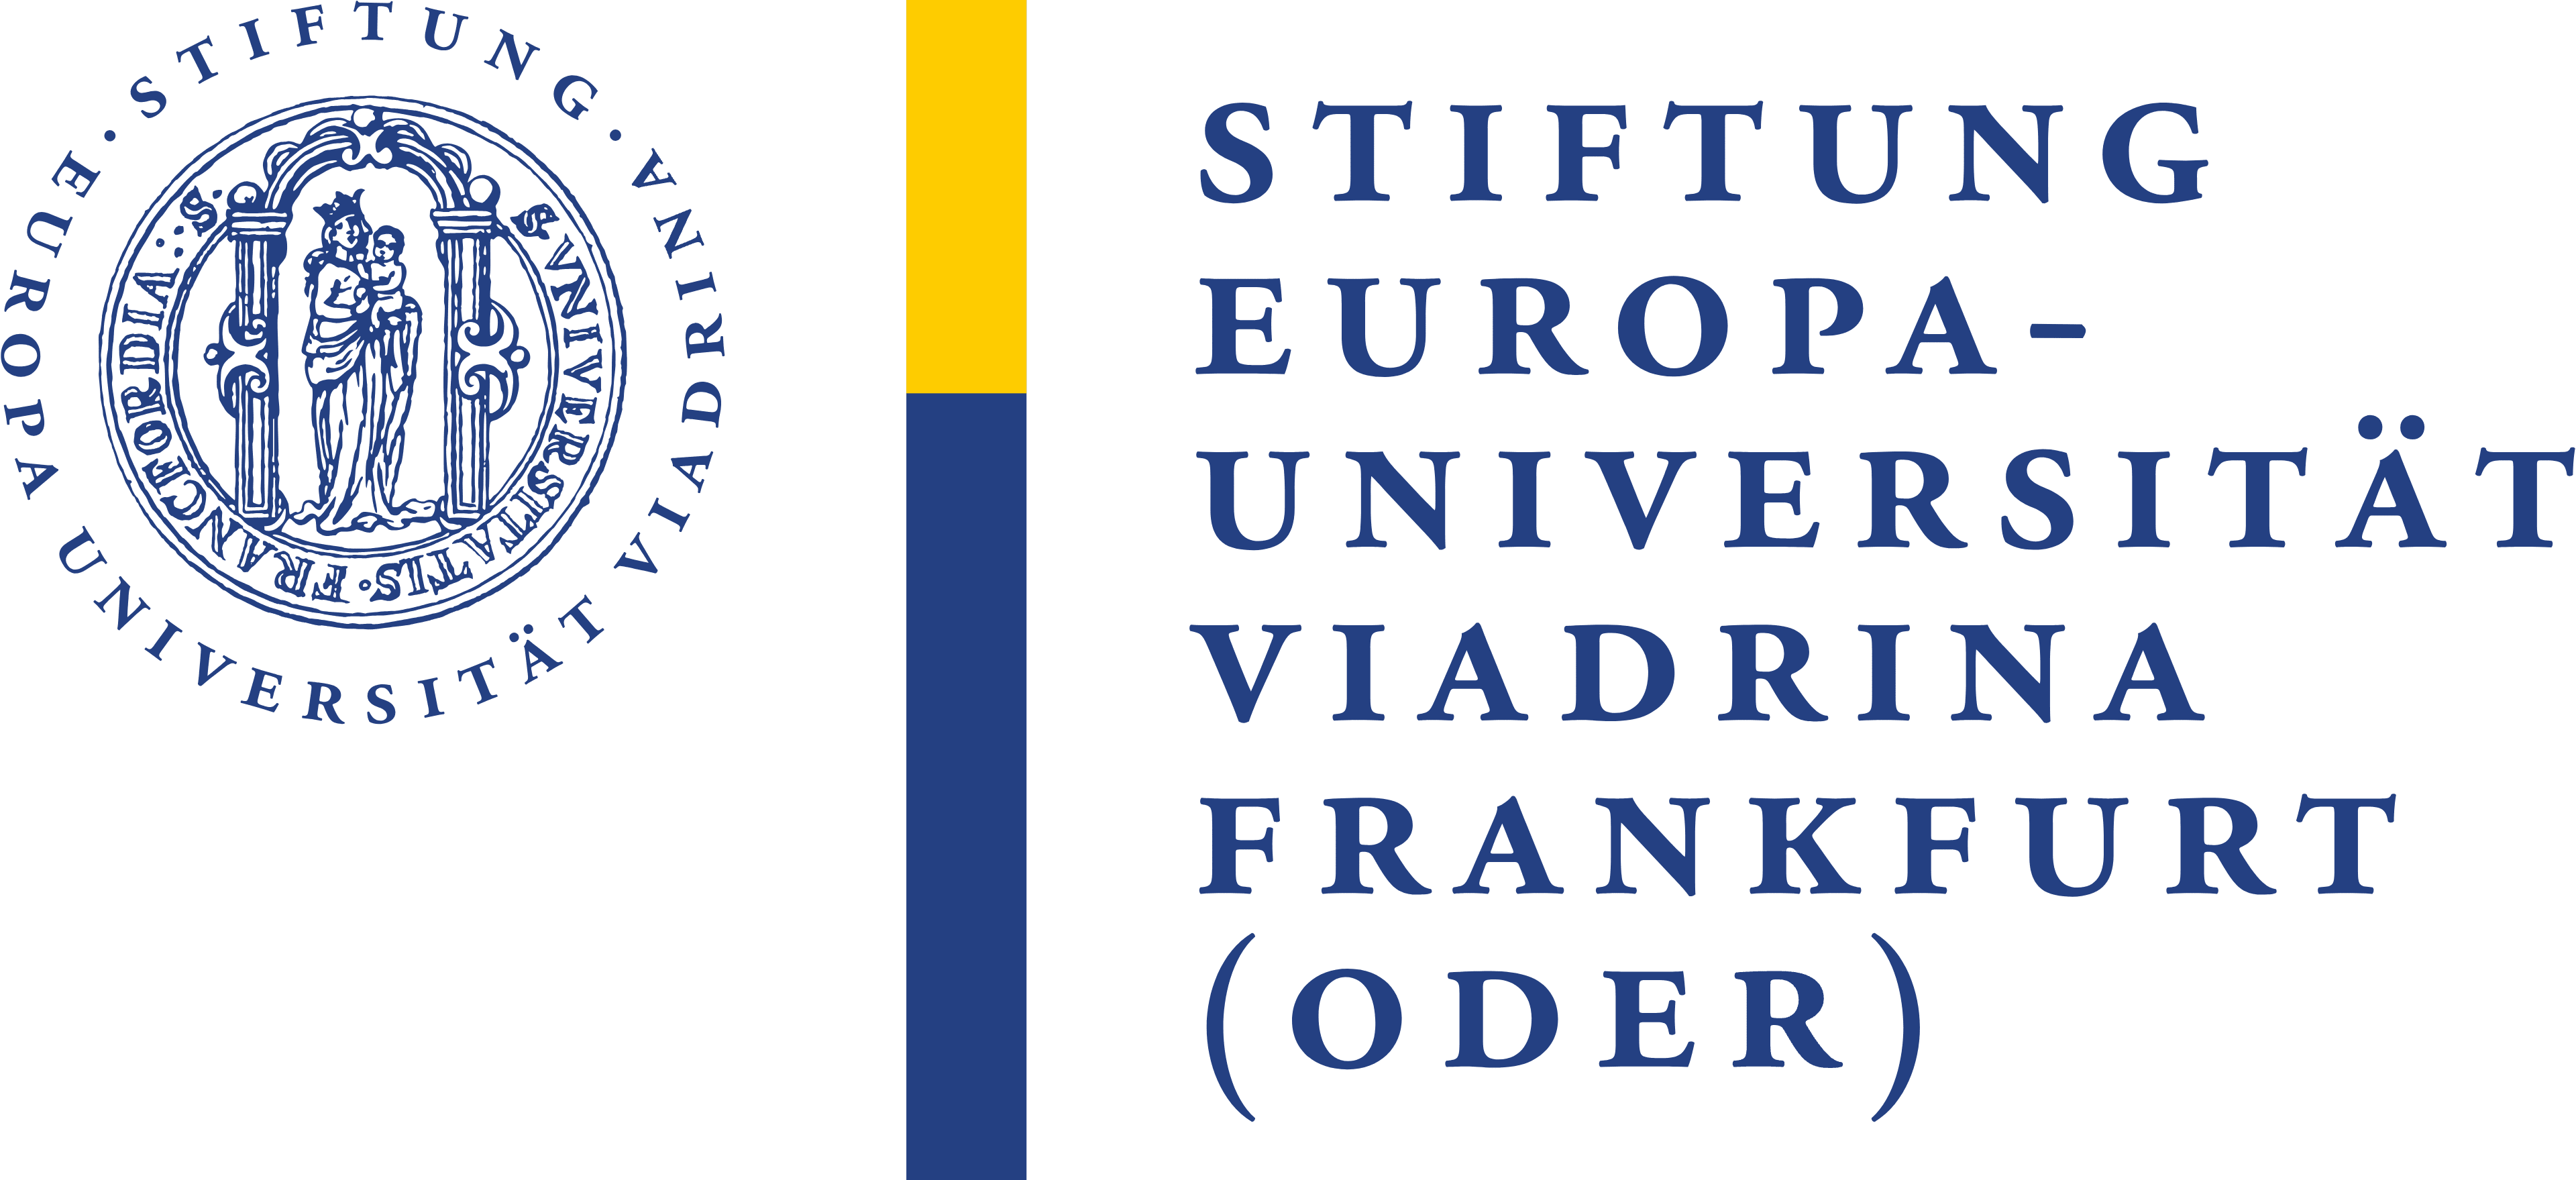 Europa Universität Viadrina logo